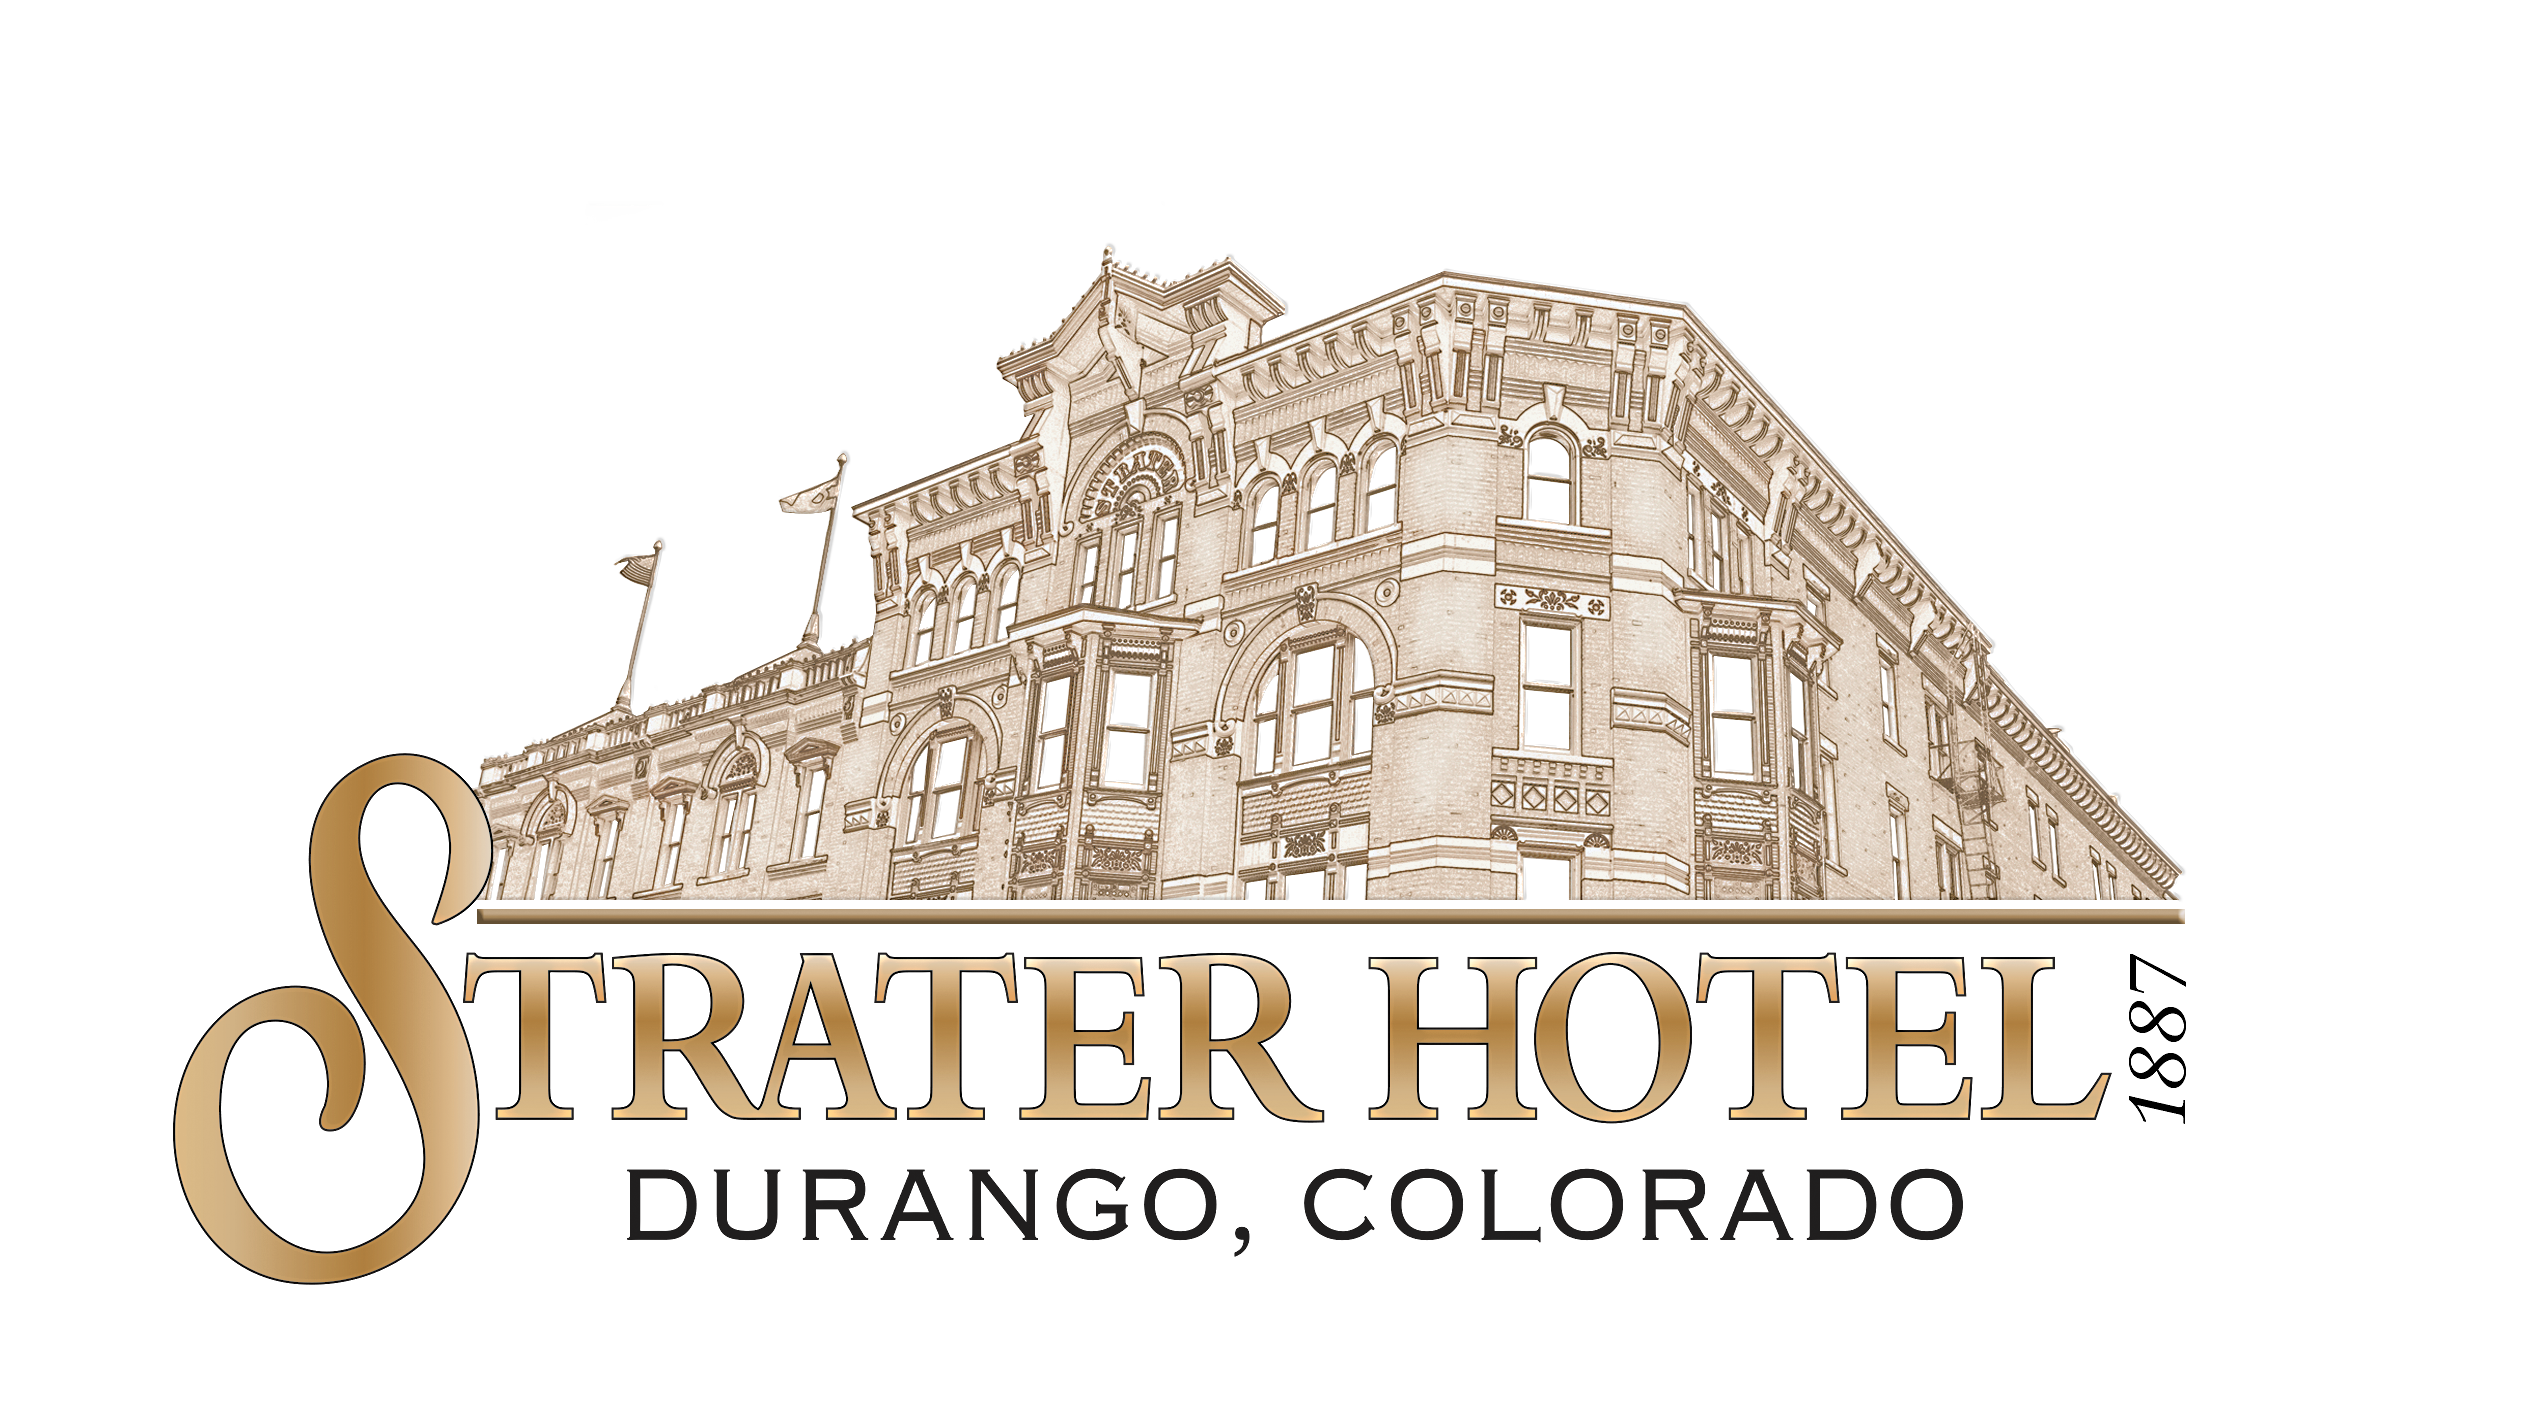 Strater Hotel, Durango, Colorado